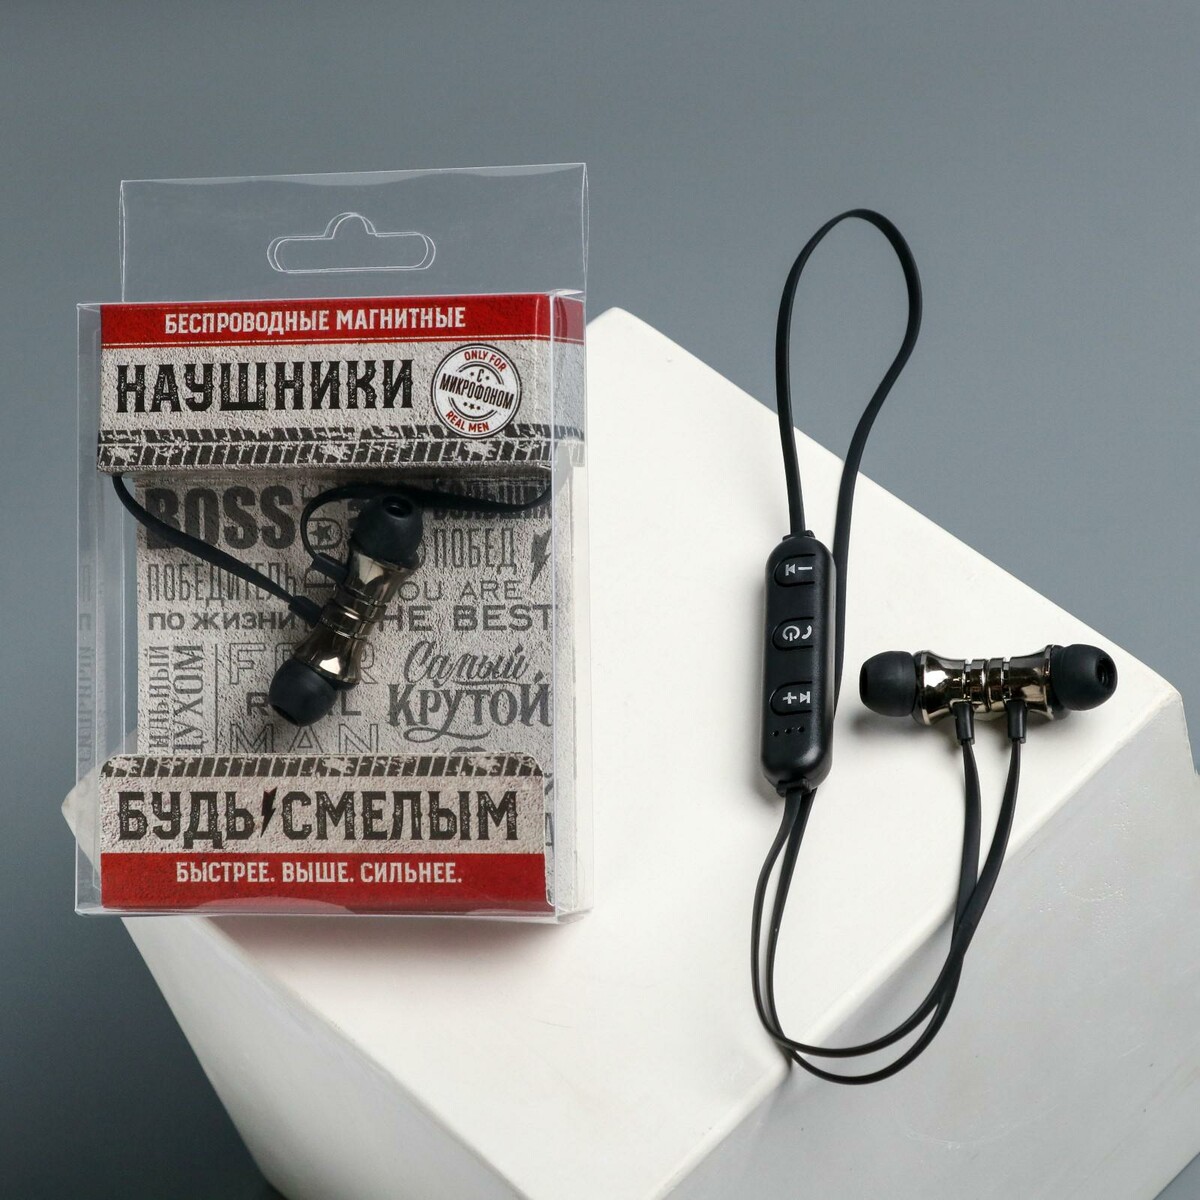 Беспроводные магнитные наушники с микрофоном наушники red line с микрофоном внутриканальные bhs 03